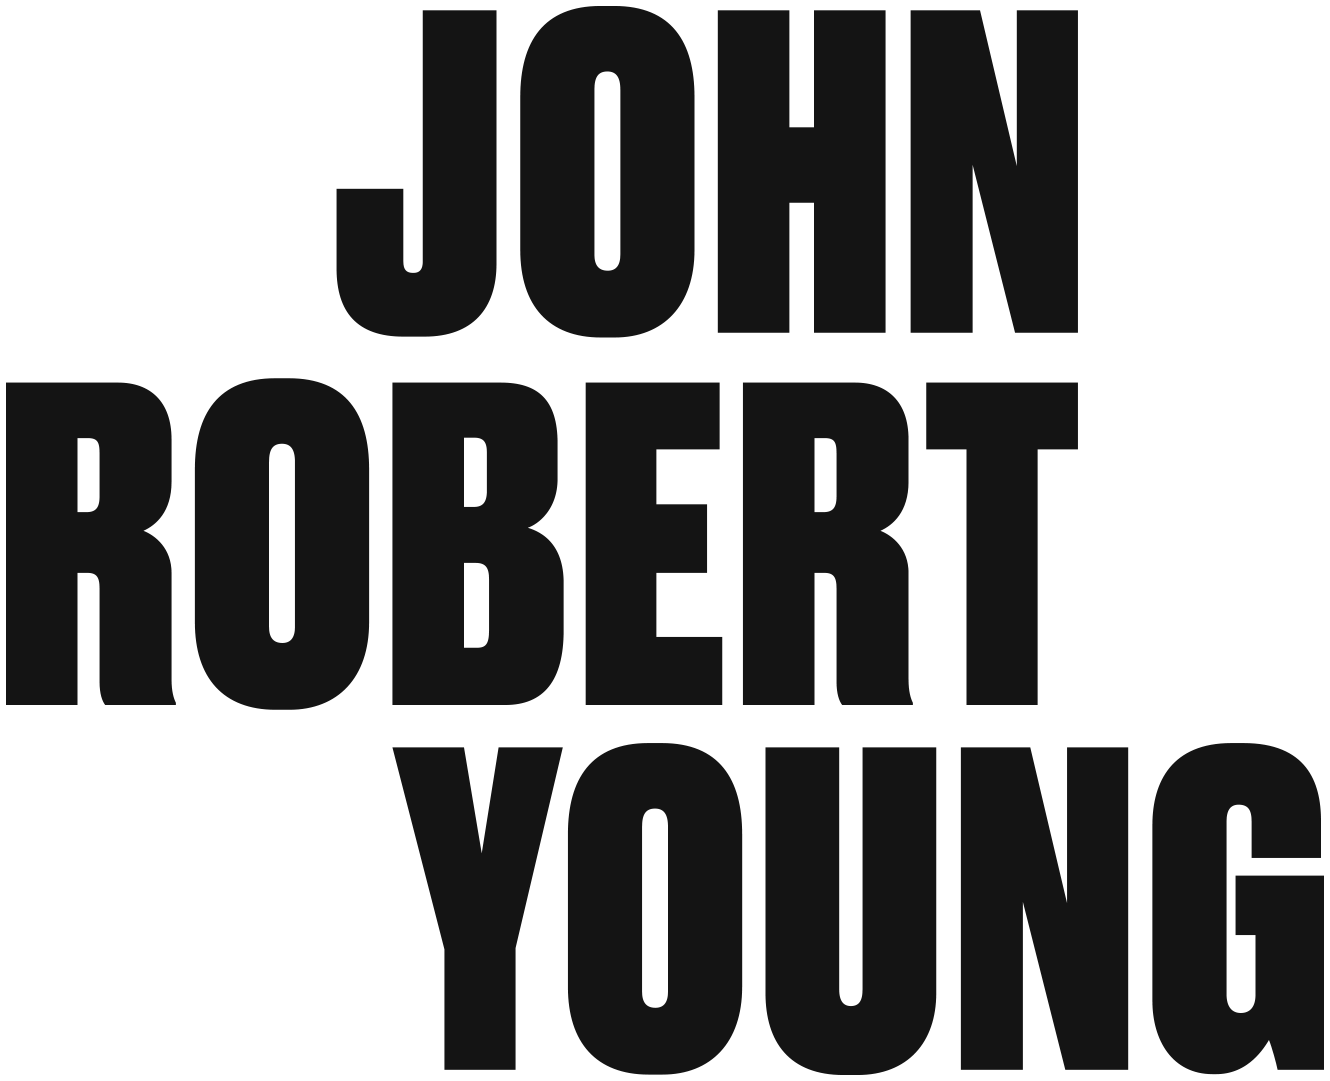 John Robert Young